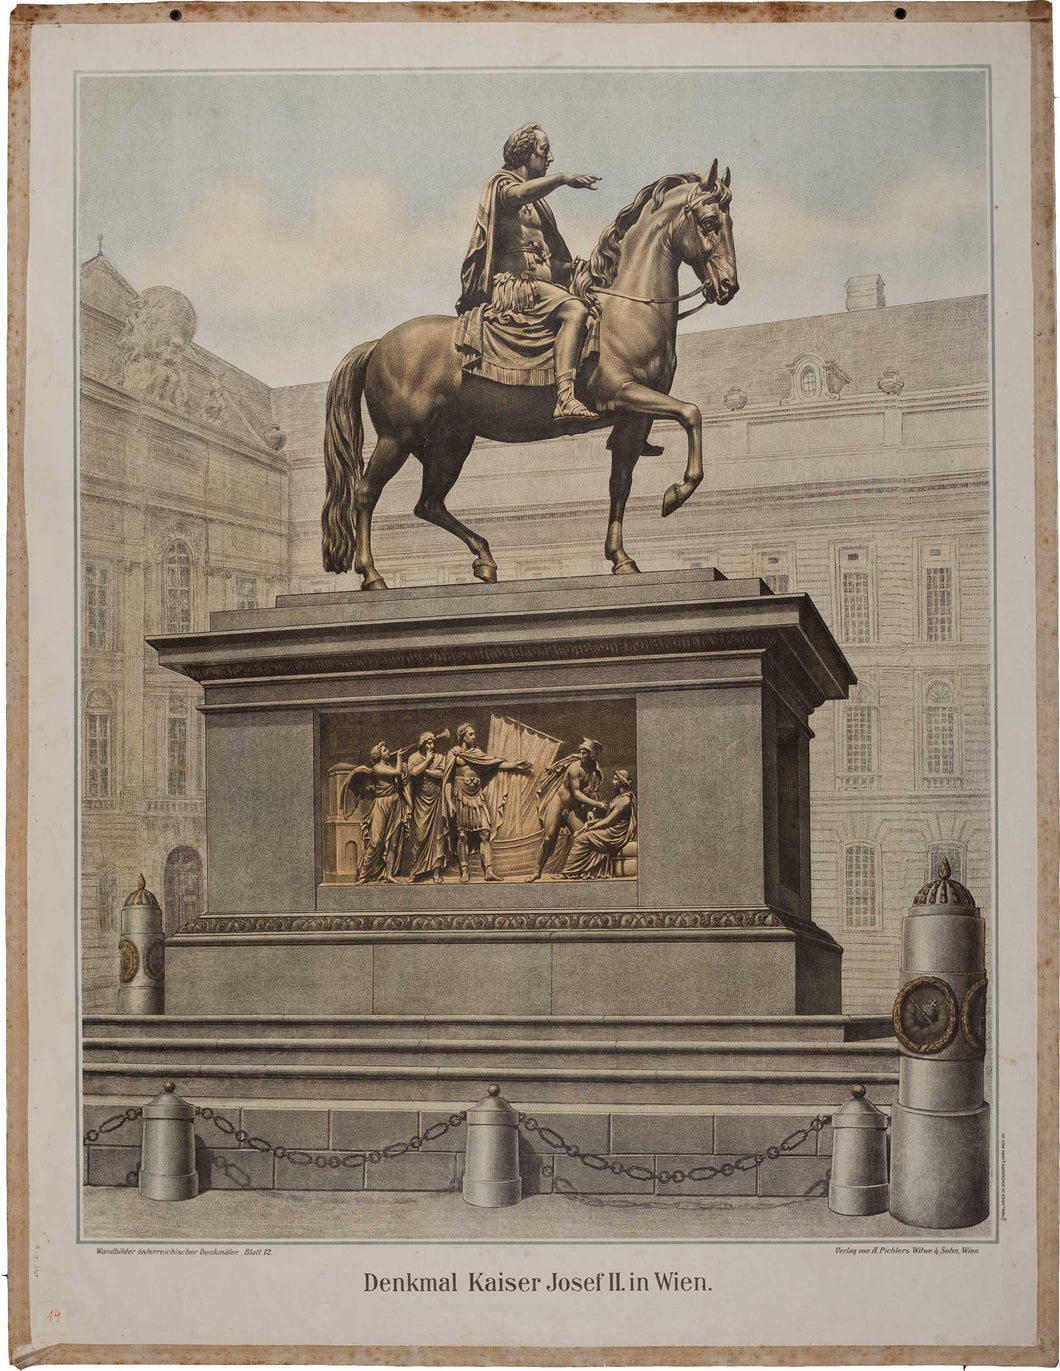 Denkmal Kaiser Josef II. in Wien